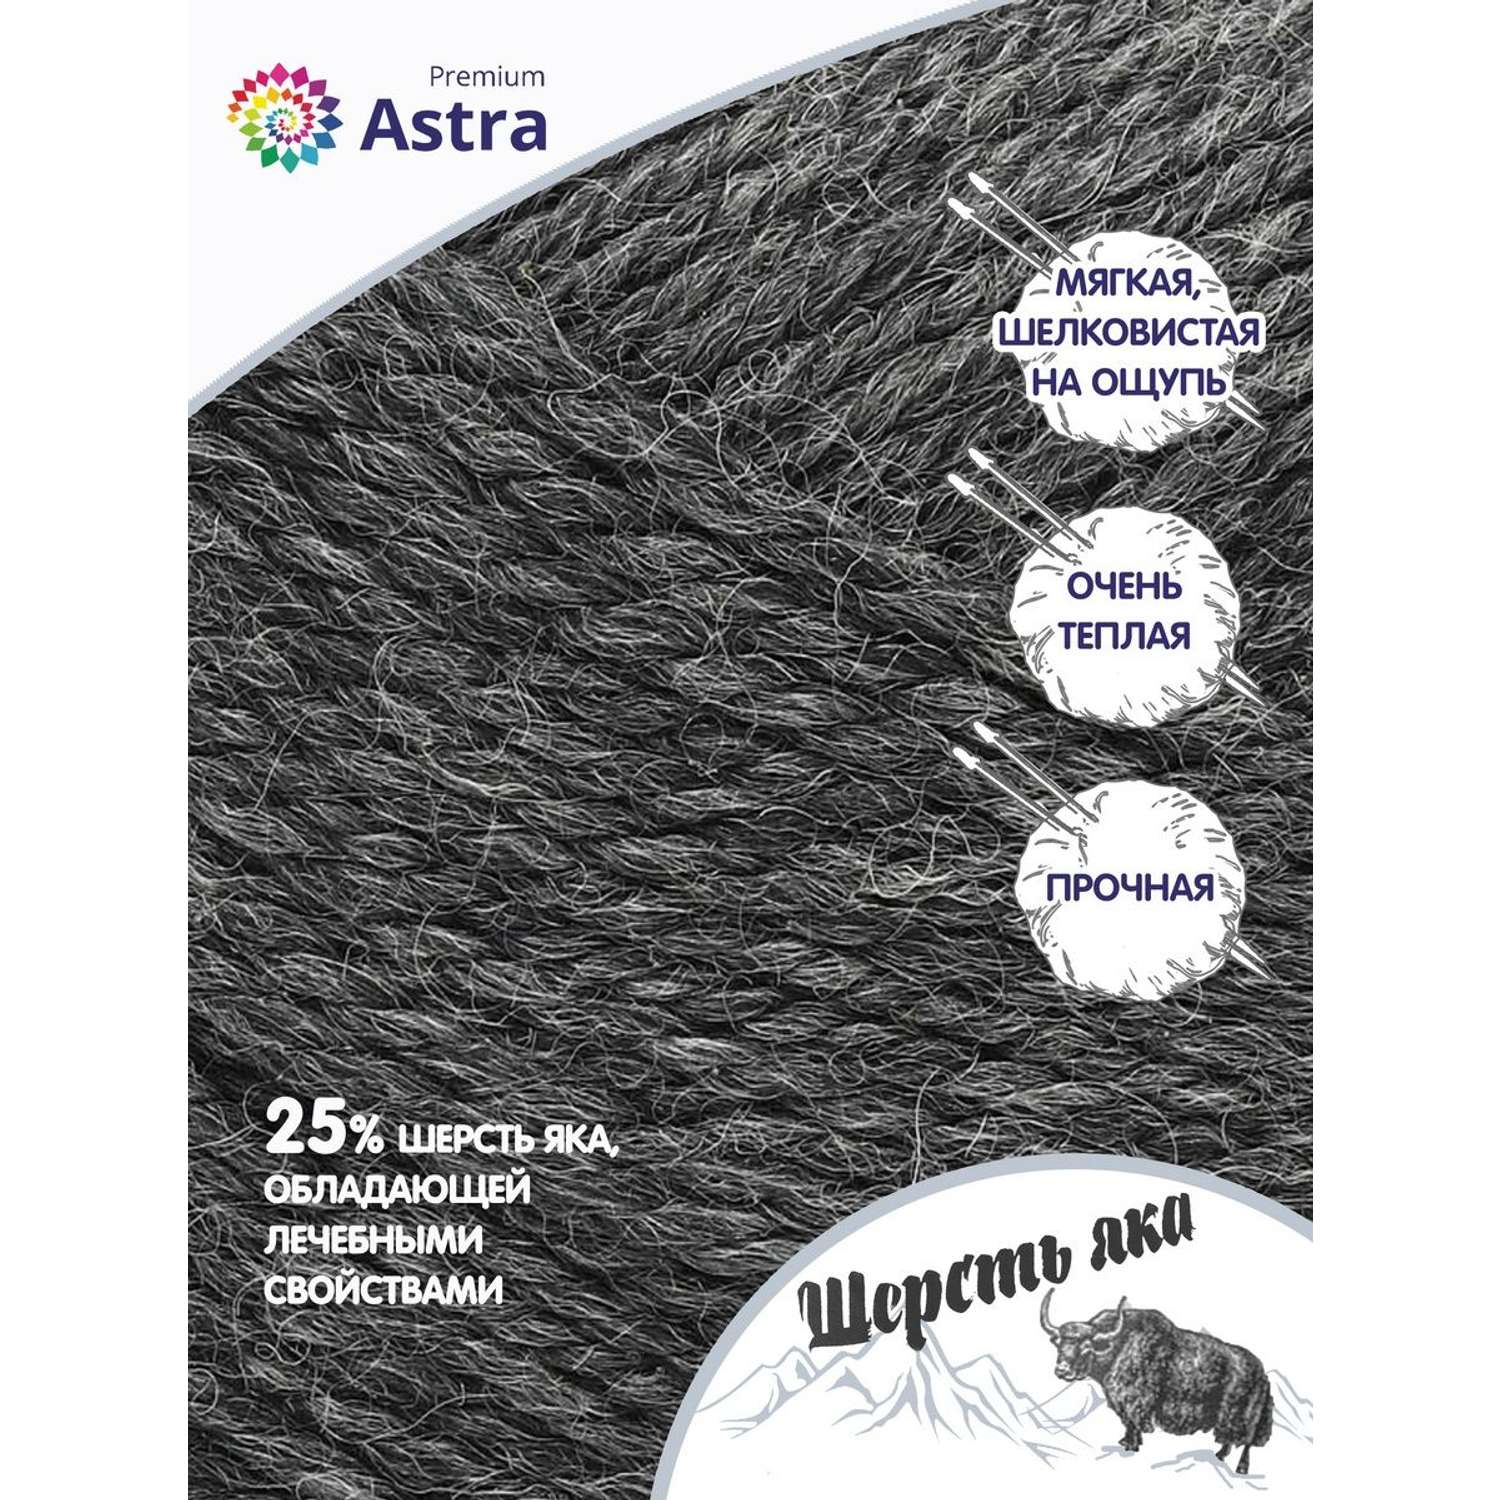 Пряжа Astra Premium Шерсть яка Yak wool теплая мягкая 100 г 120 м 14 графит 2 мотка - фото 2